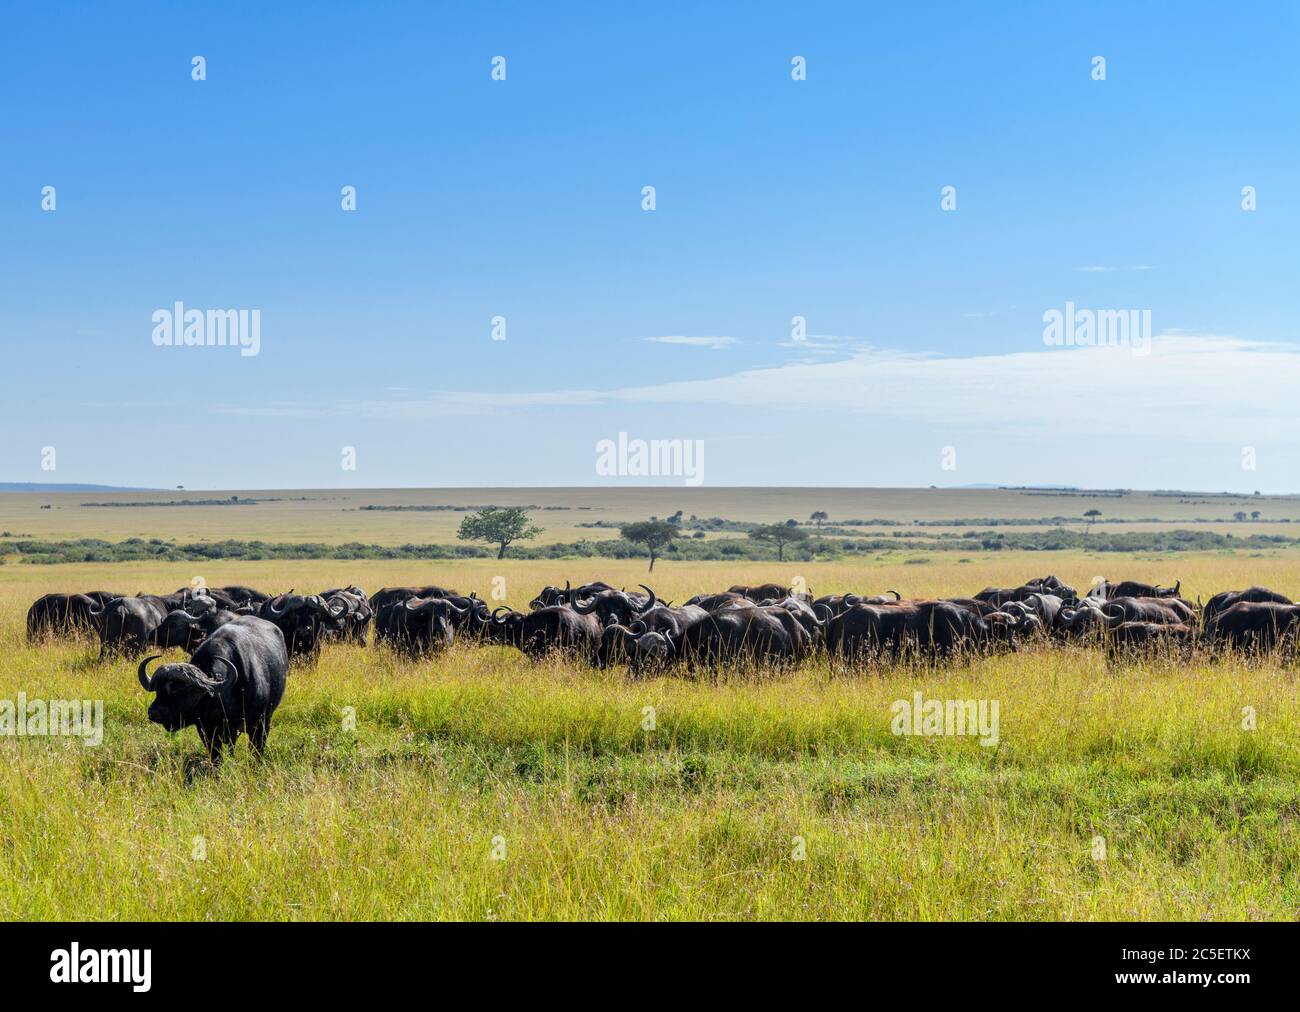 Buffalo. Troupeau de buffles africains ou de buffles du Cap (Syncerus caffer), réserve nationale de Masai Mara, Kenya, Afrique Banque D'Images